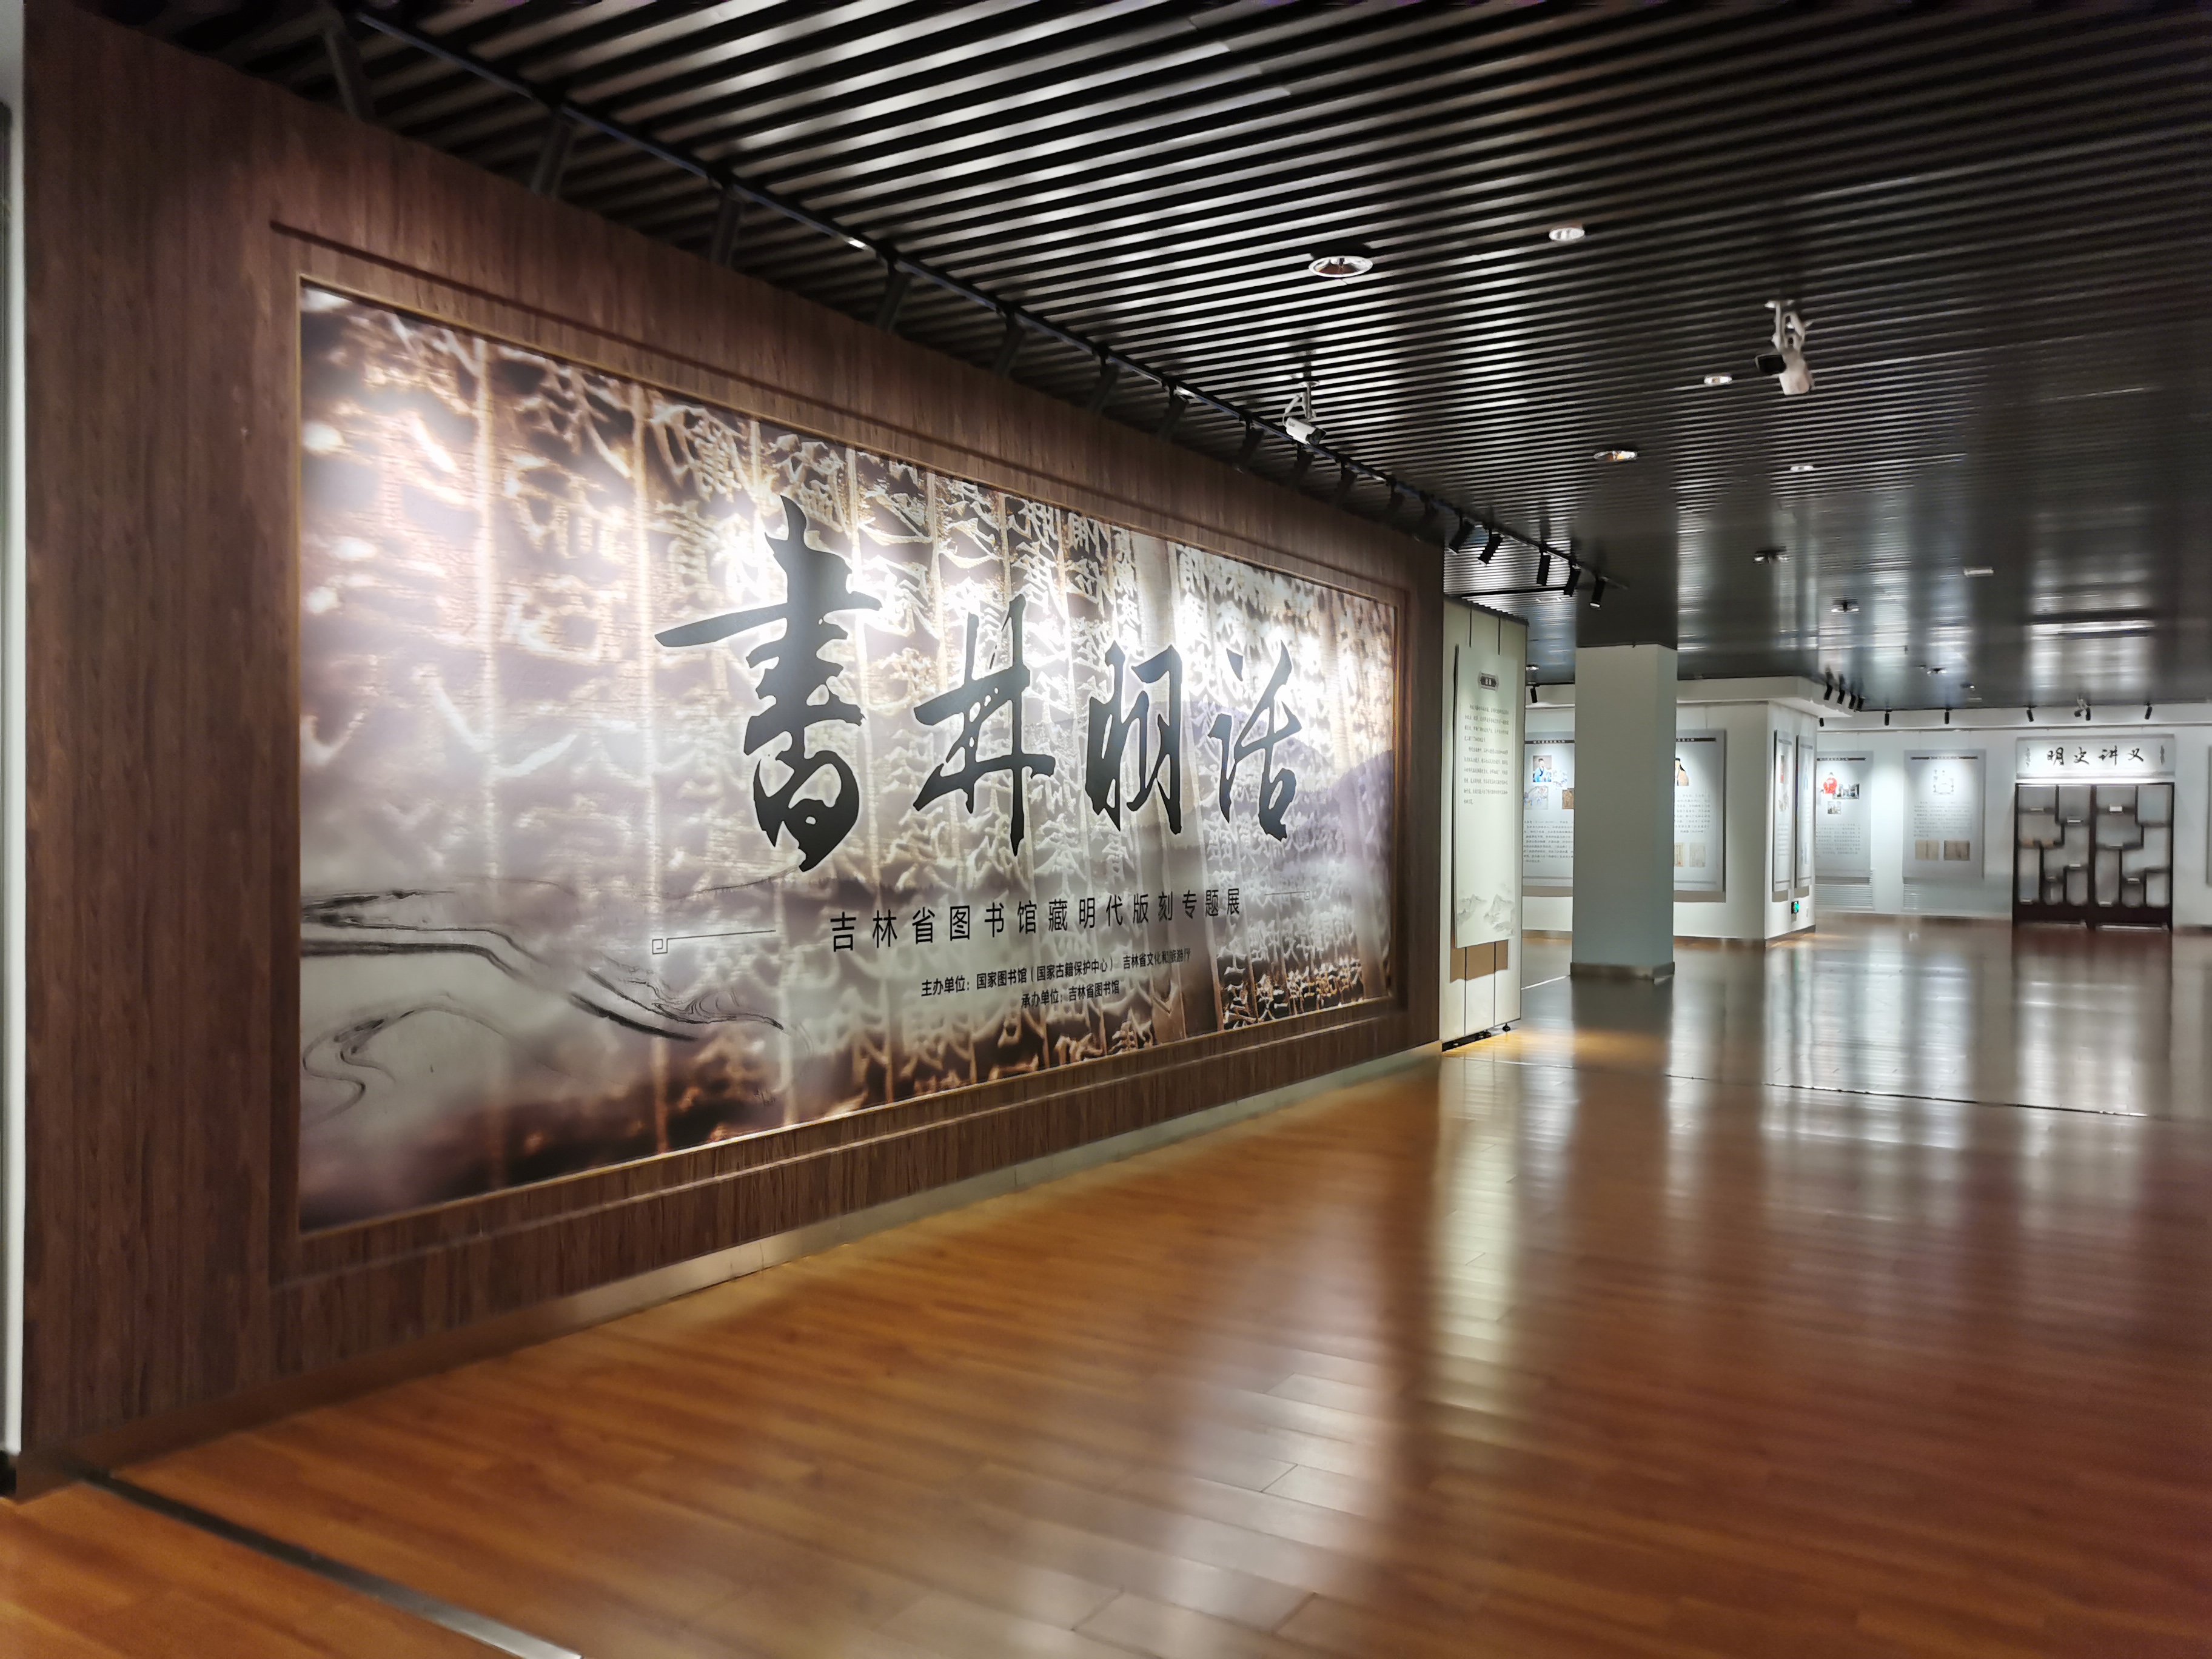 В Библиотеке провинции Цзилинь открылась тематическая выставка «Богатая библиотека художественных трудов (сказаний) династии Мин – Выставка специальной коллекции гравюр династии Мин»